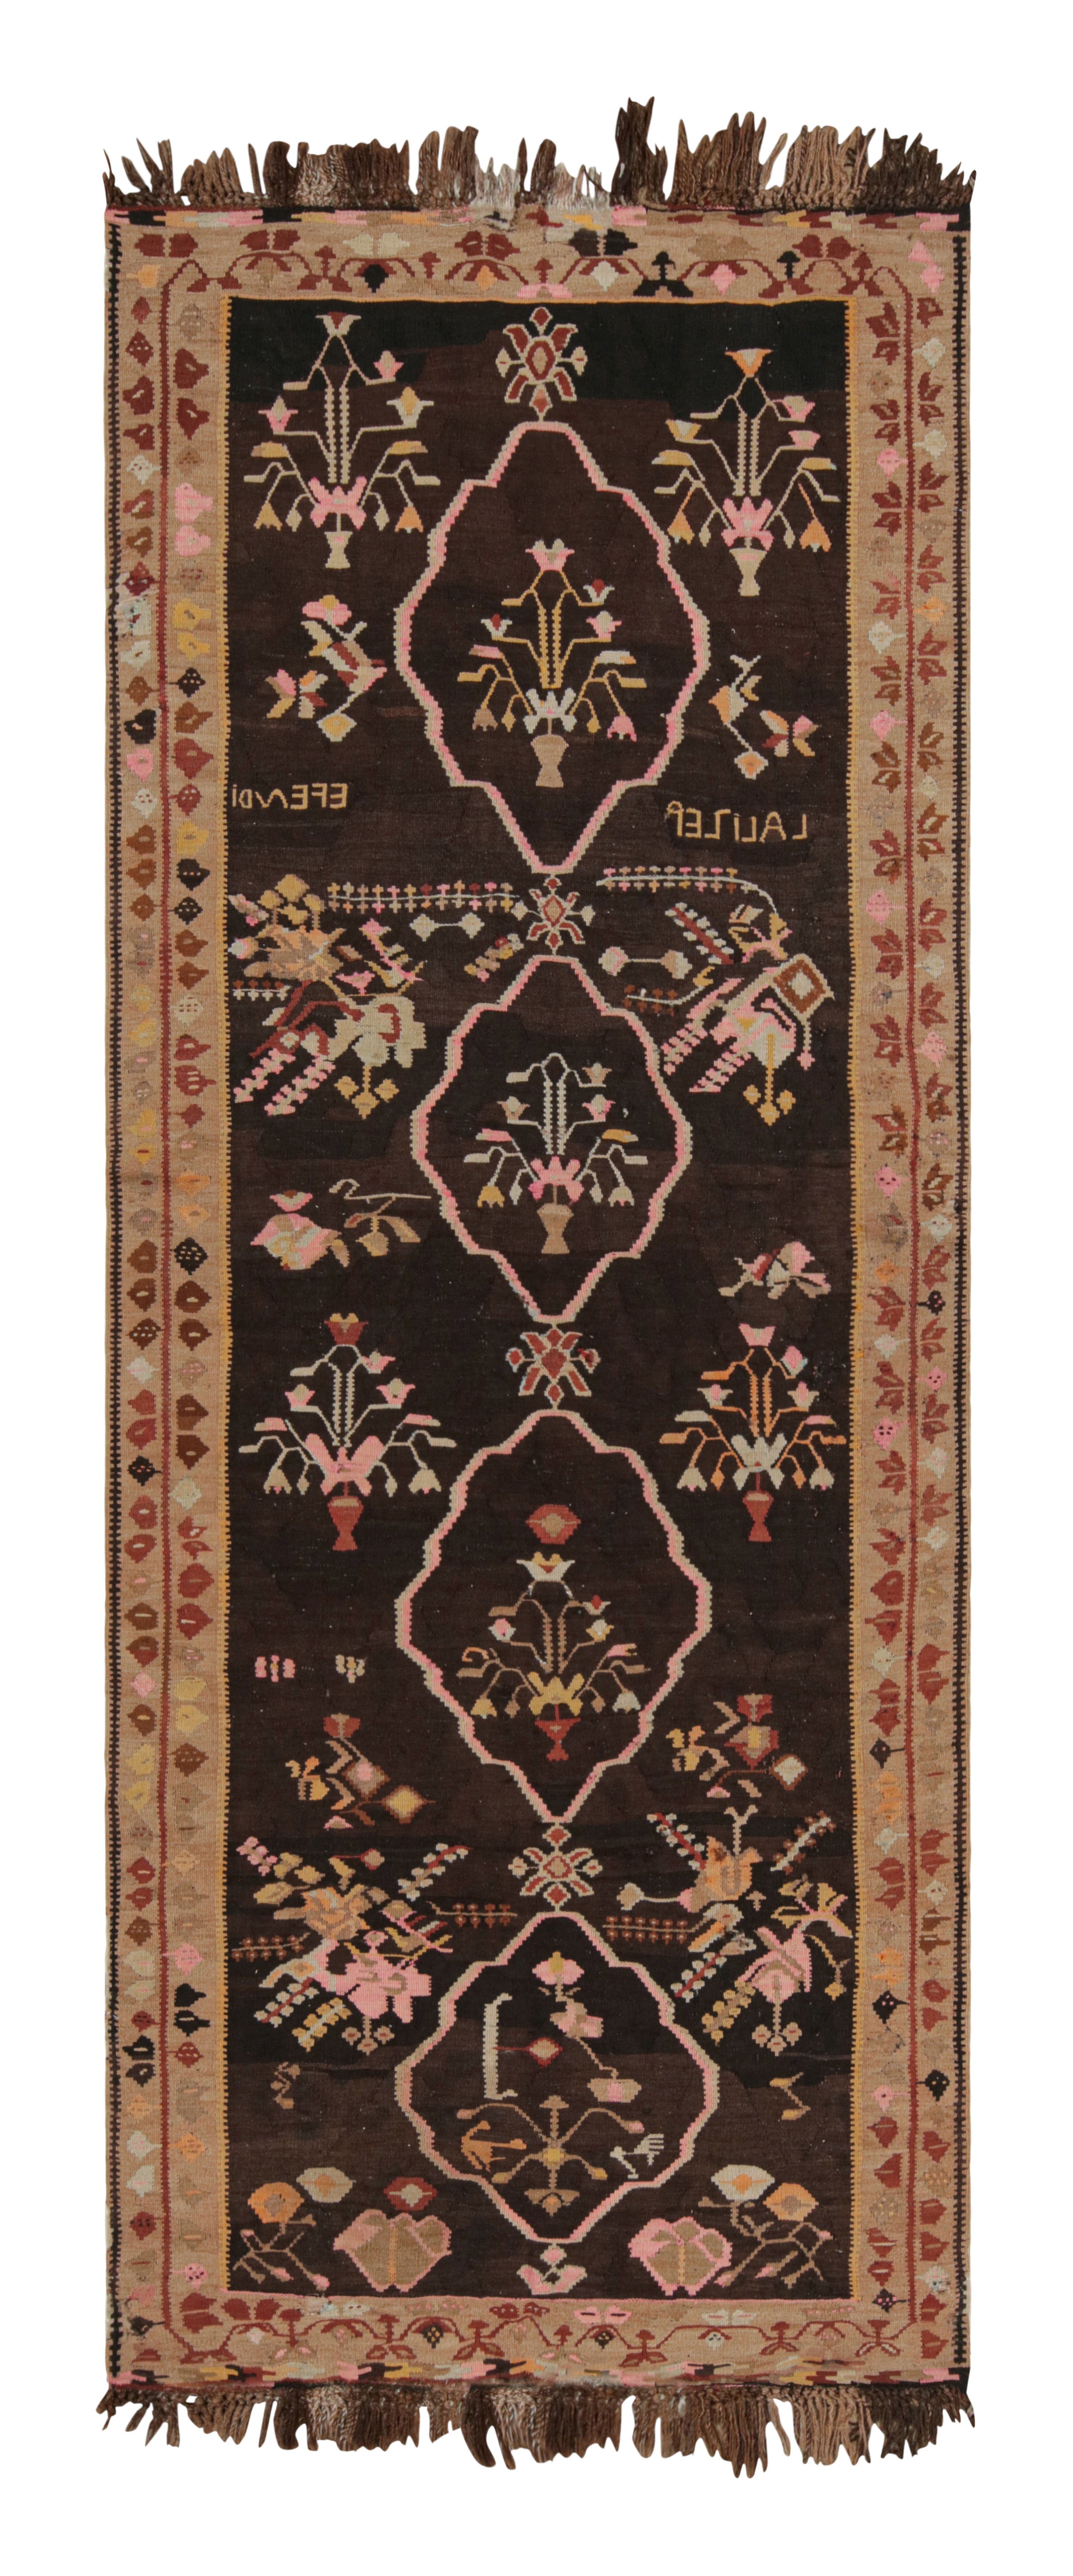 Handwoven Midcentury Vintage Rug in Beige Brown Floral Pattern by Rug & Kilim